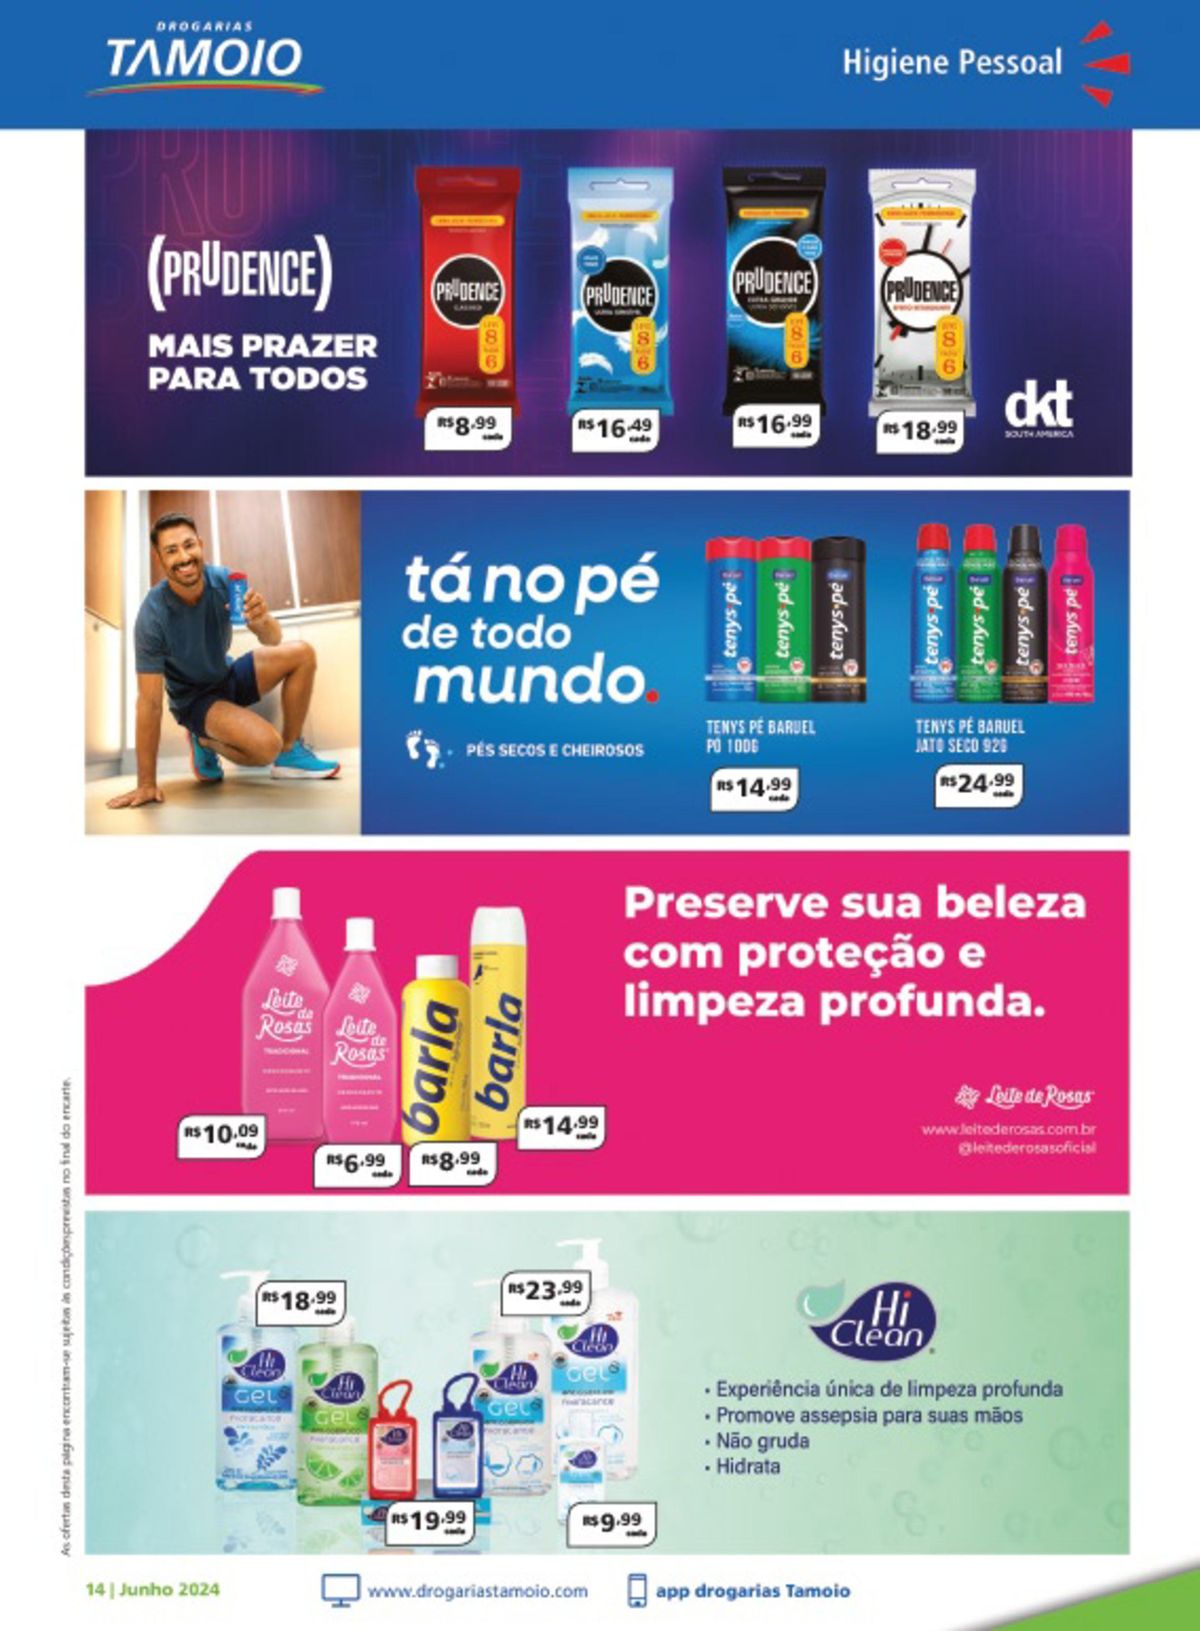 Promoção de produtos de higiene pessoal da marca Tamoio